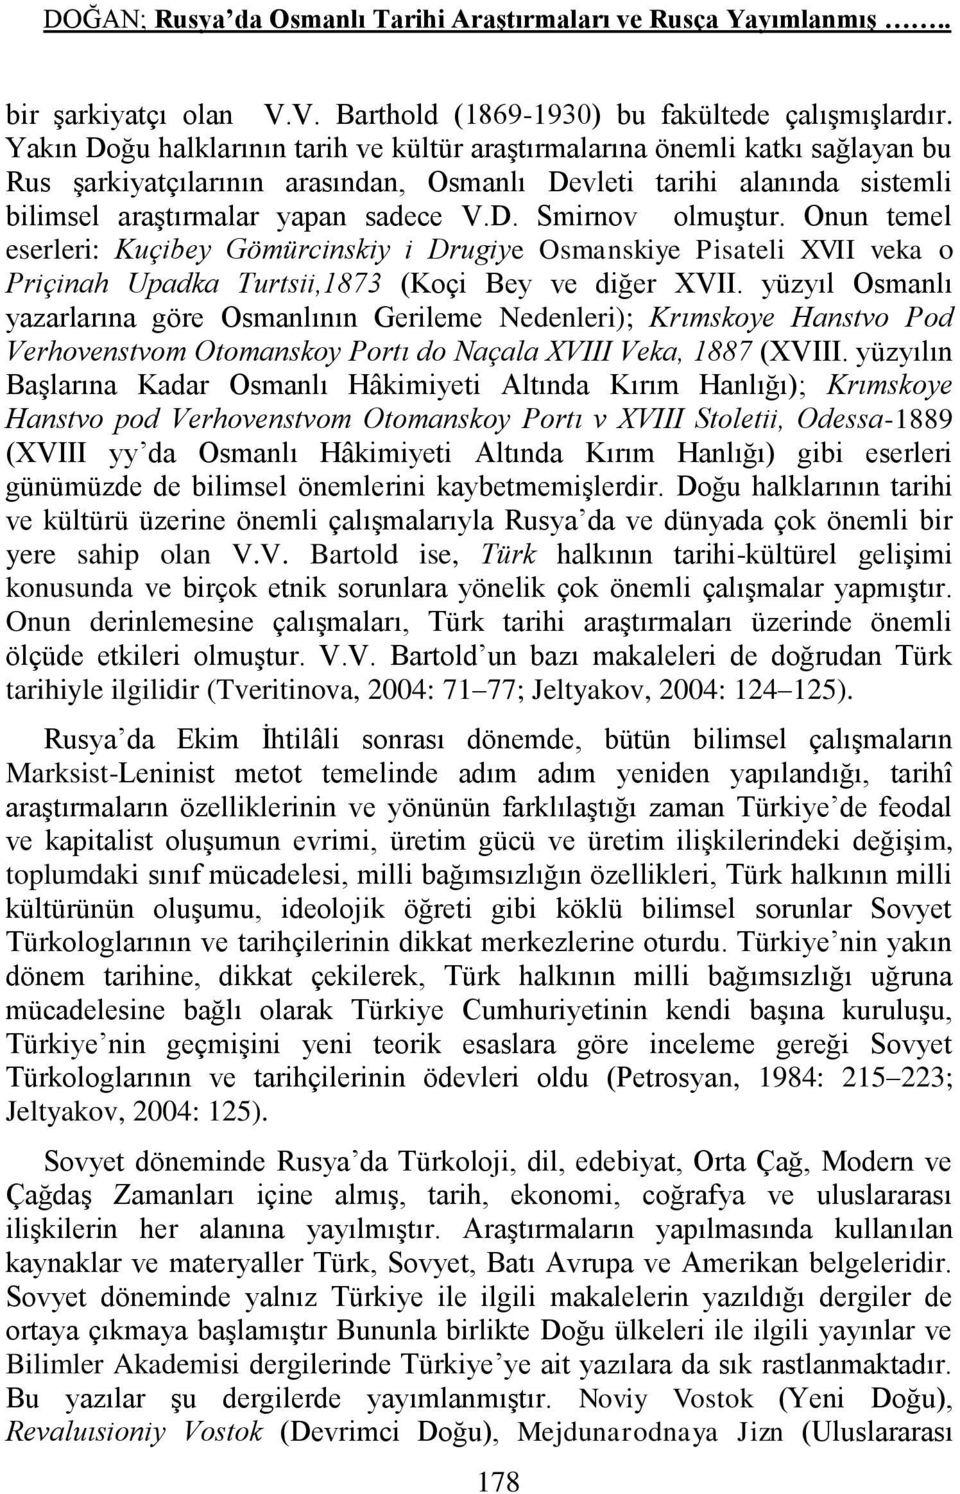 Onun temel eserleri: Kuçibey Gömürcinskiy i Drugiye Osmanskiye Pisateli XVII veka o Priçinah Upadka Turtsii,1873 (Koçi Bey ve diğer XVII.